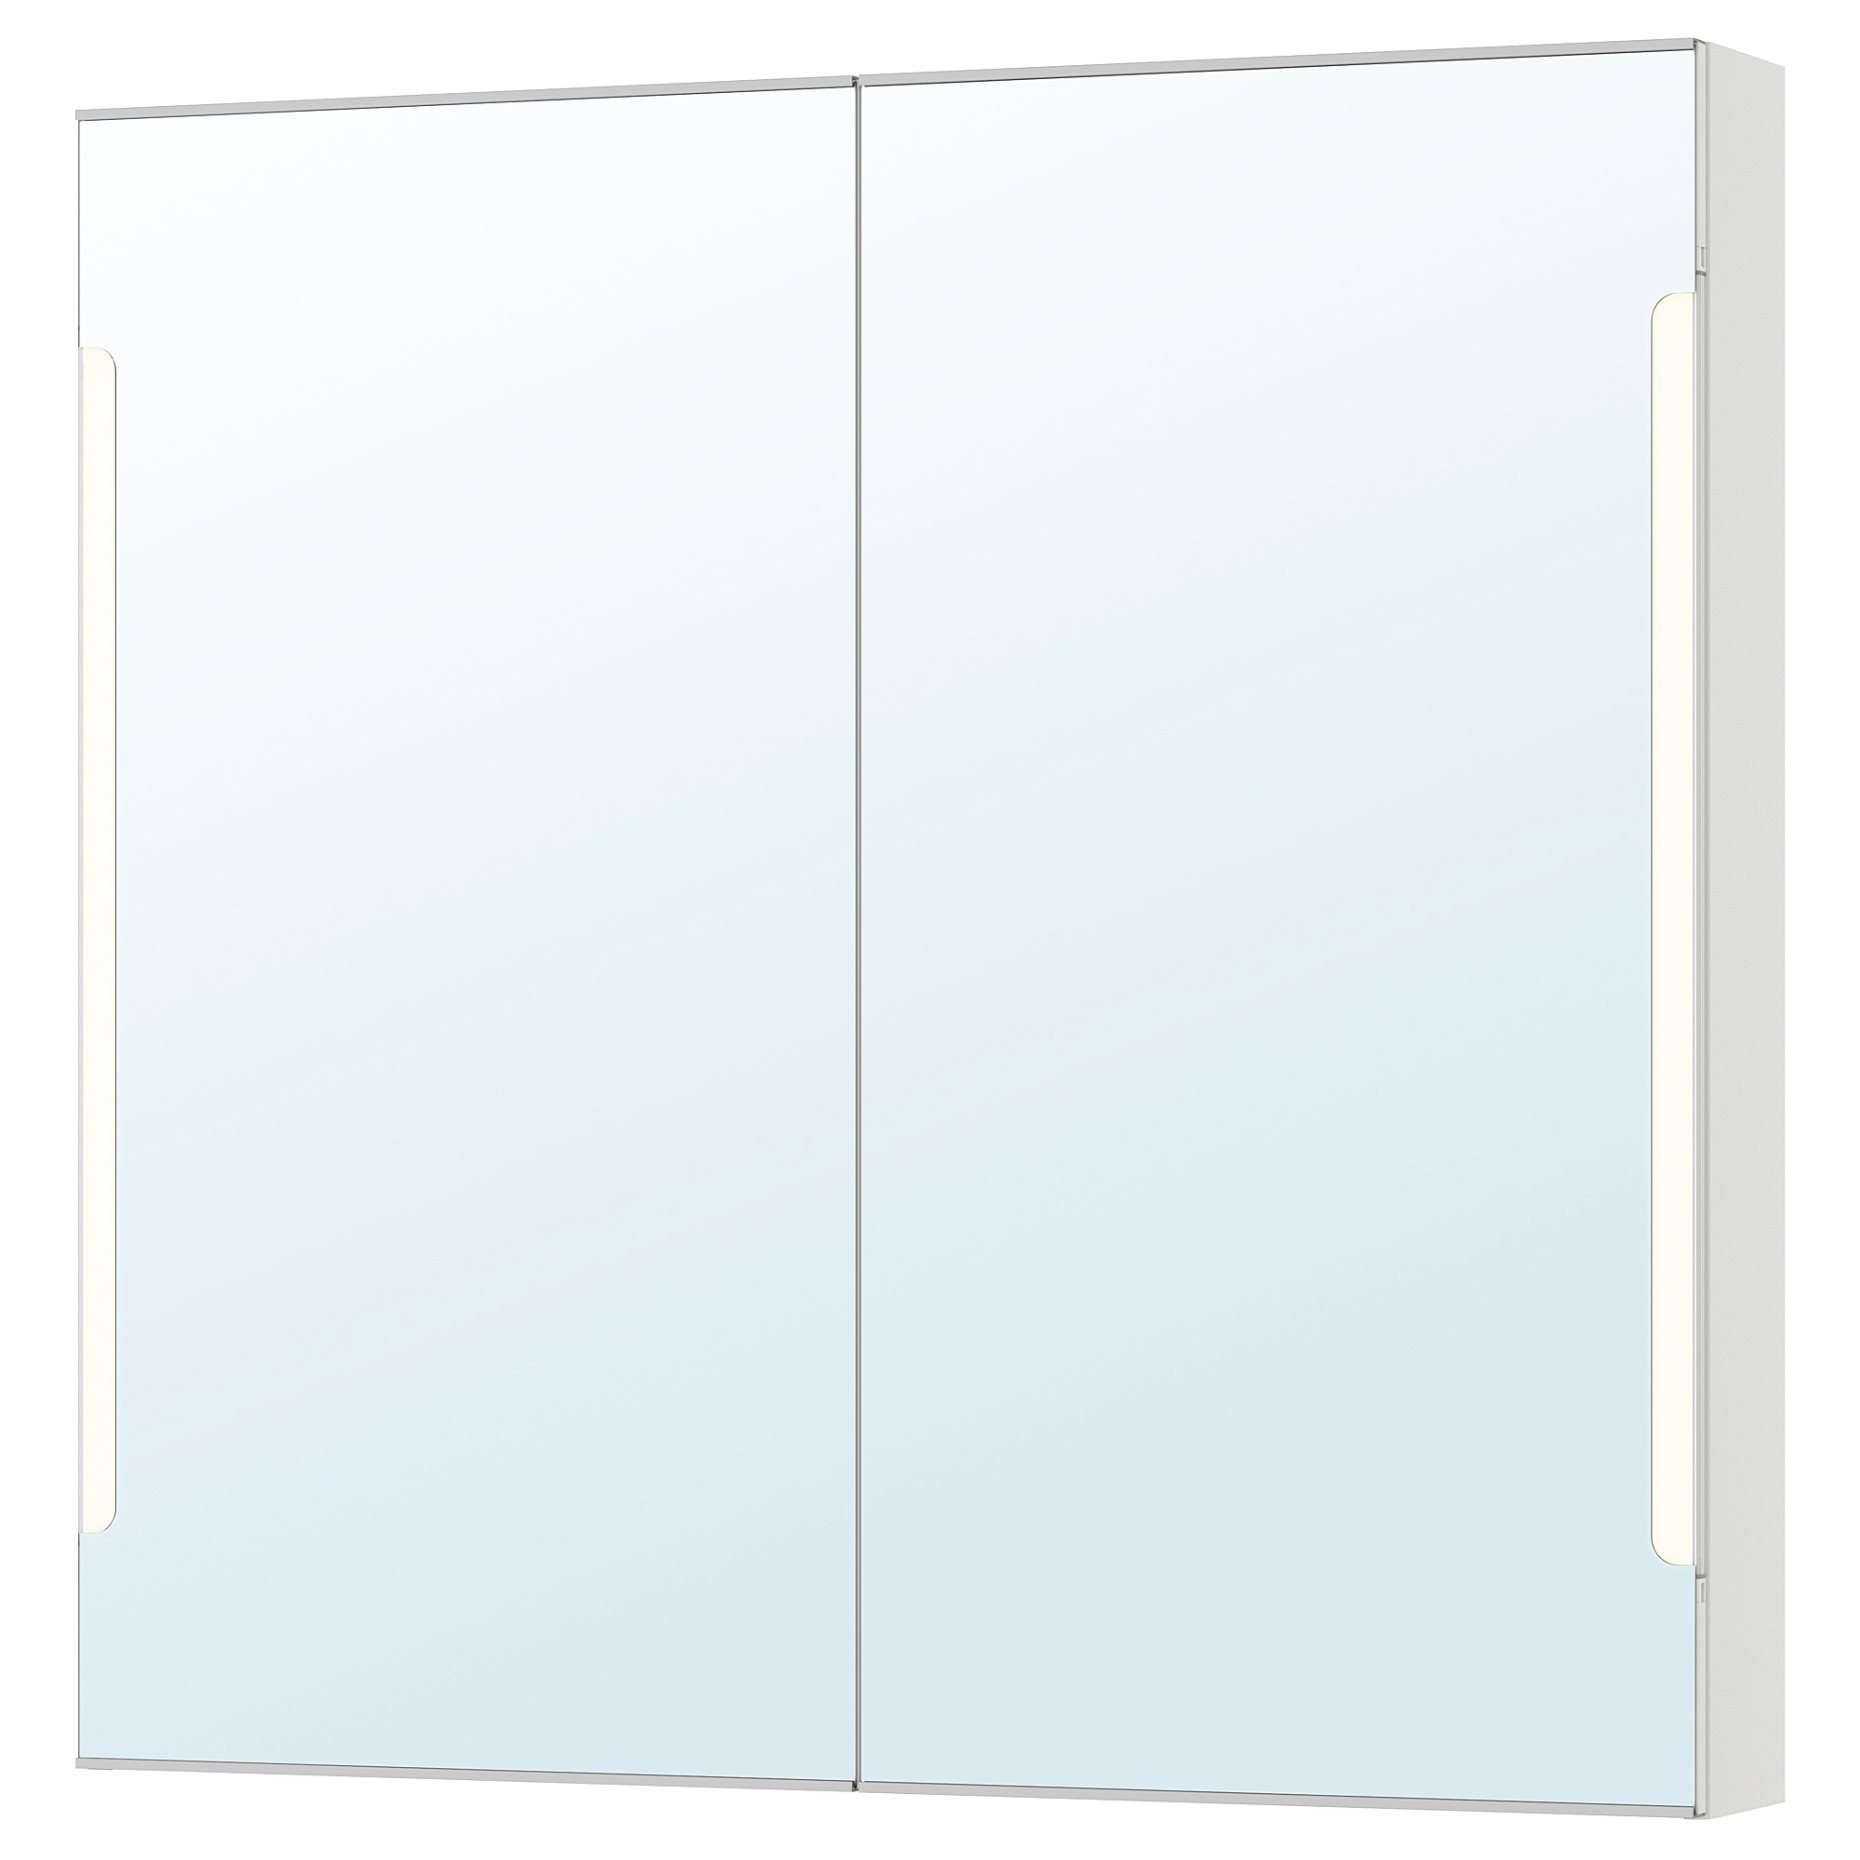 STORJORM, mirror cabinet 2 door/built-in lighting, 202.481.18